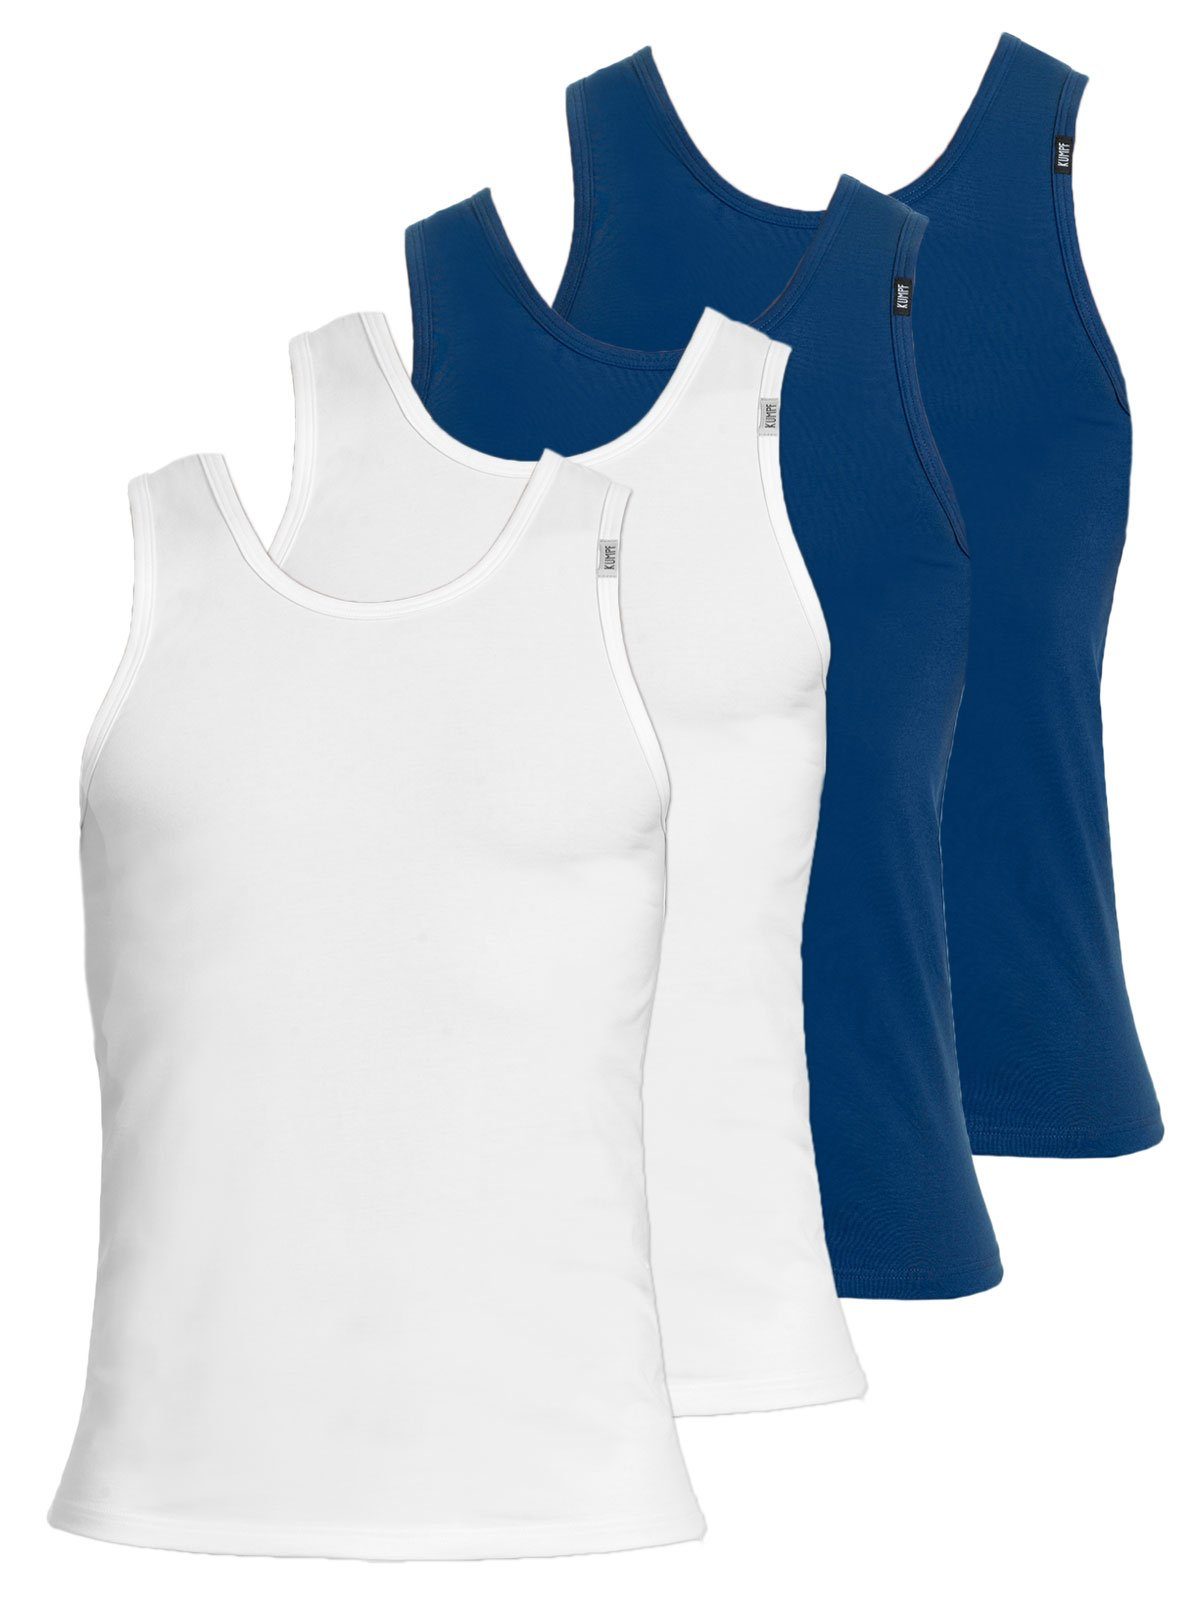 KUMPF Achselhemd 4er Sparpack Herren Unterhemd Bio Cotton (Spar-Set, 4-St) hohe Markenqualität darkblue weiss